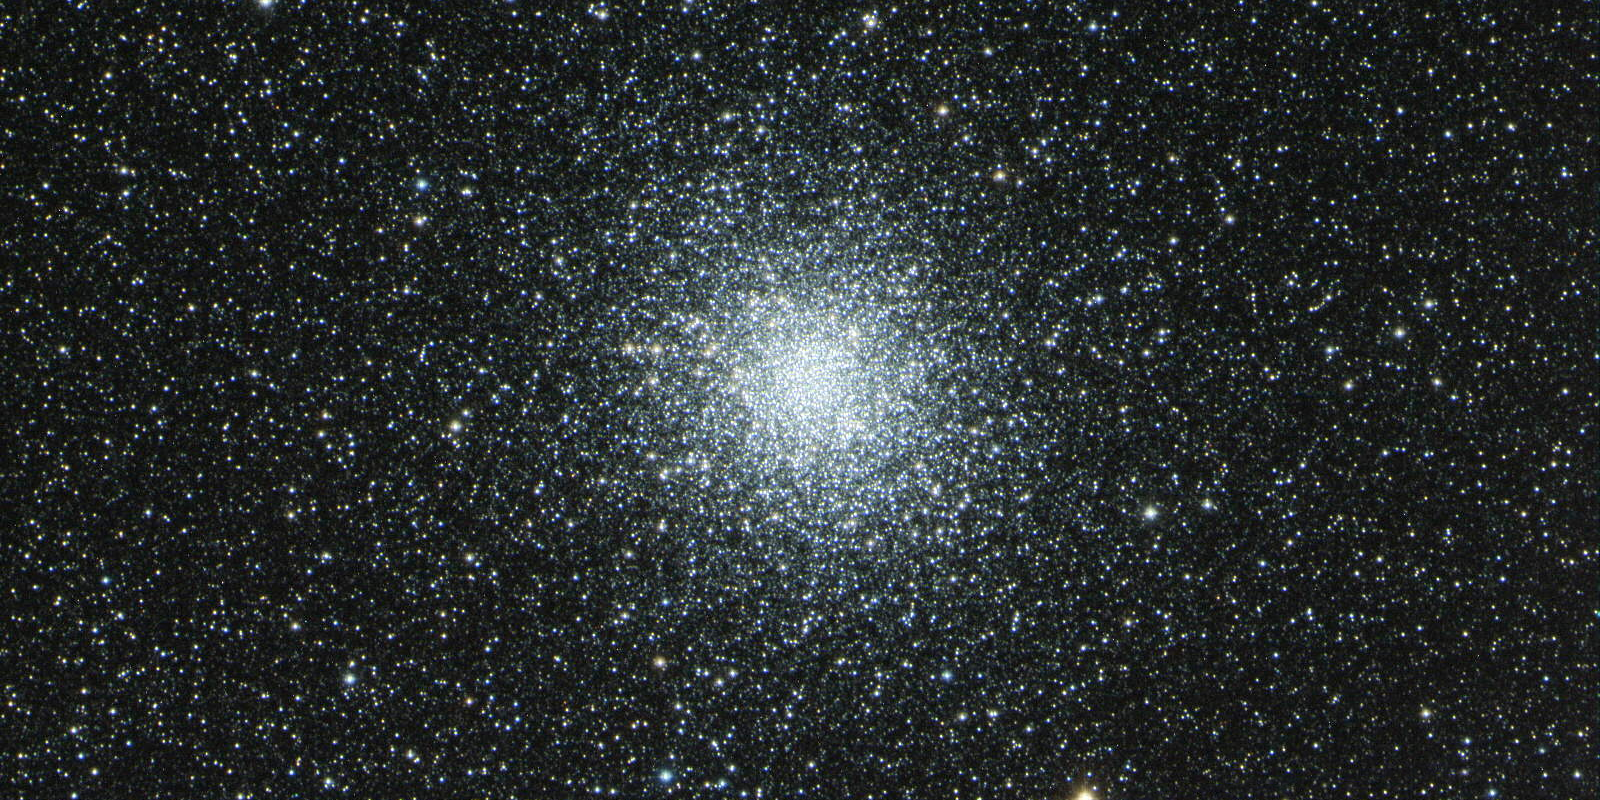 GALAKTICKA TEZKA Kulová hvězdokupa M 22 1 c AsM 22 na snímku dalekohledem Centurion 18 s kamerou BIG T-2. troworks. M 22 je jednou z nejbližších a nejjasnějších kulových hvězdokup.